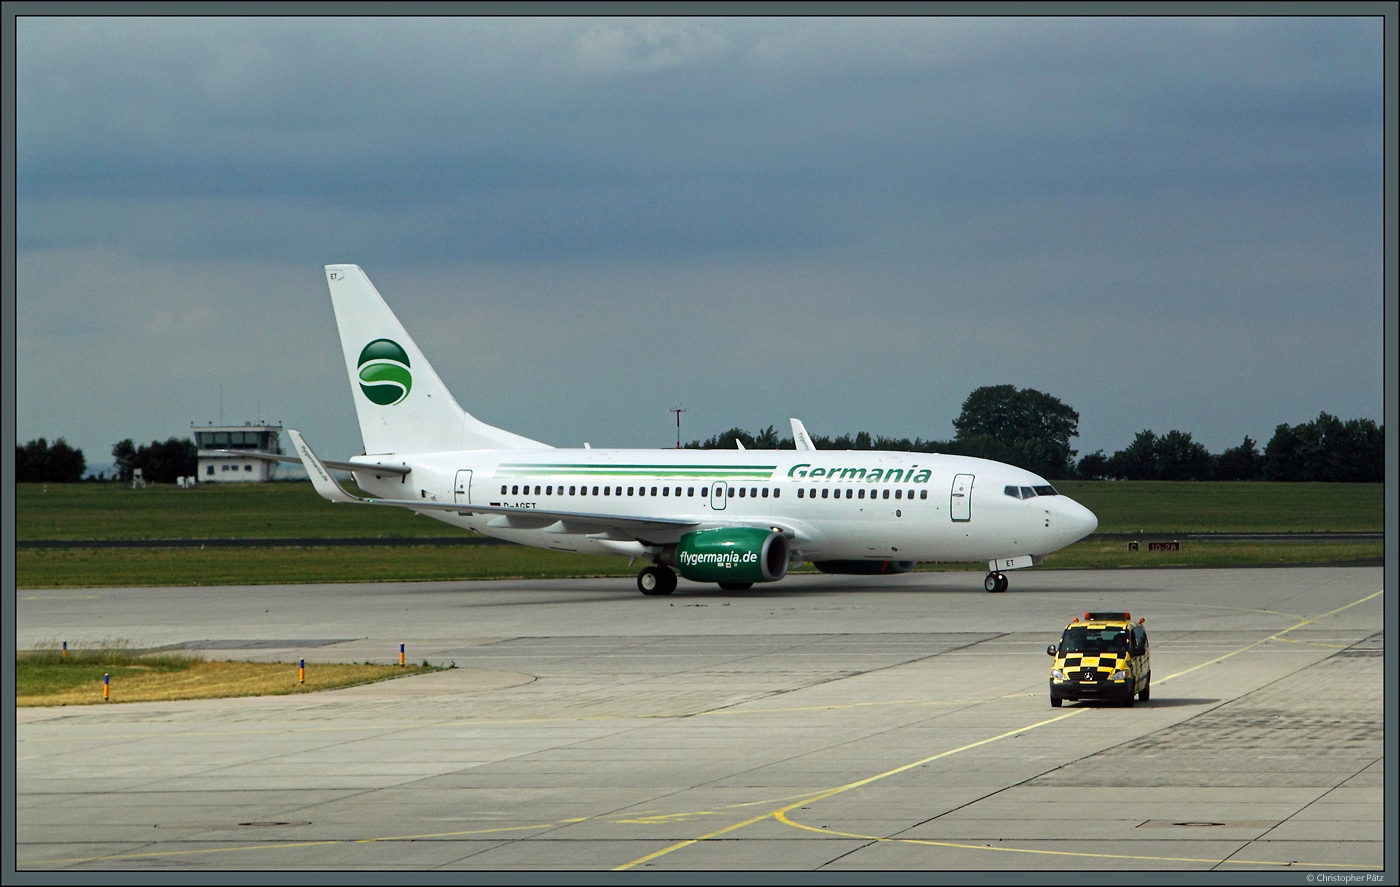 Die 737-75B D-AGET der Germania ist am 21.06.2015 auf dem Flughafen Erfurt gelandet und wird von einem Follow-Me-Car zum Terminal geführt. 2019 stellte die Fluggesellschaft den Betrieb ein.